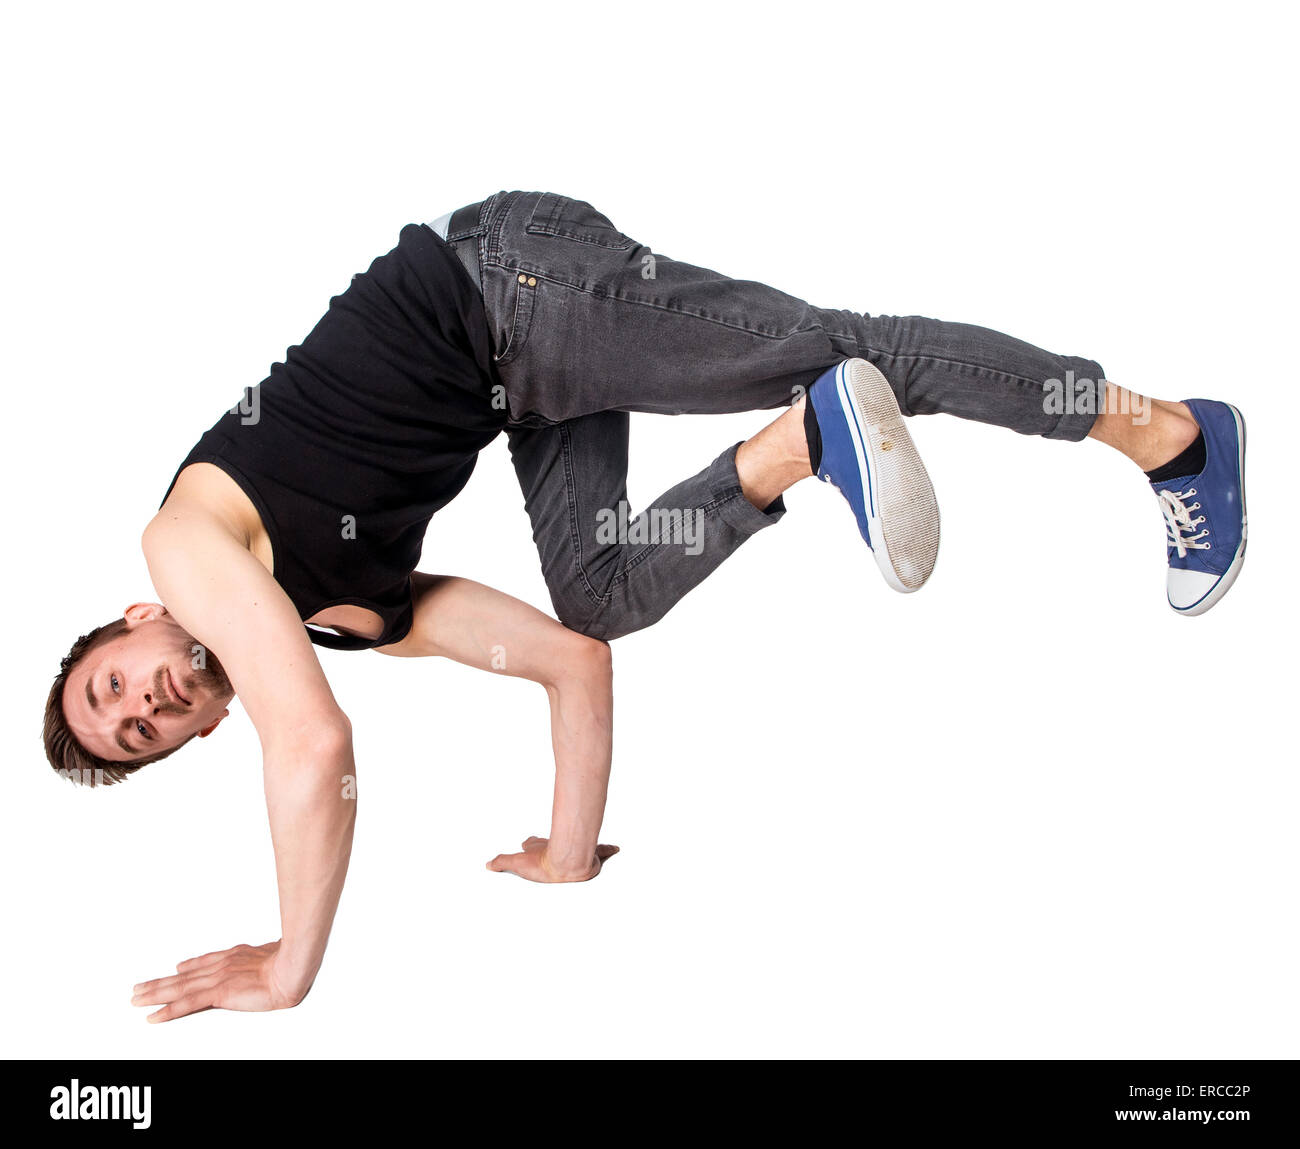 Break dancer doing handstand against  white background Stock Photo